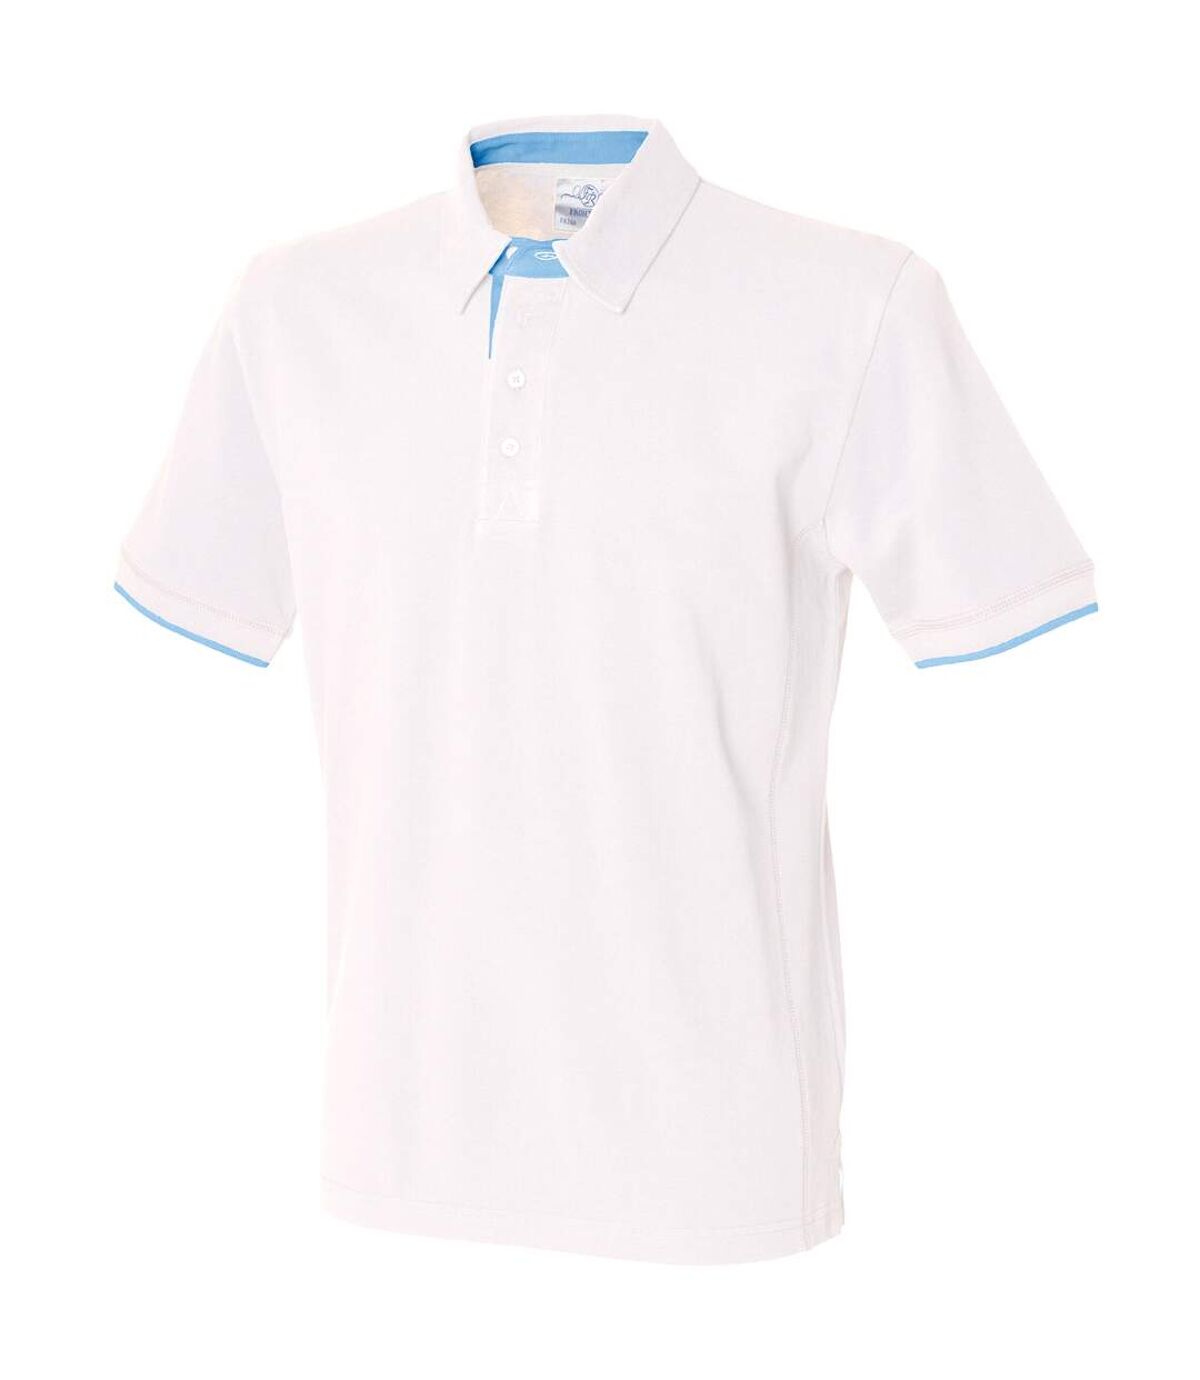 Front Row Mens Contrast Pique Polo Shirt (White/ Sky Blue) - UTRW486